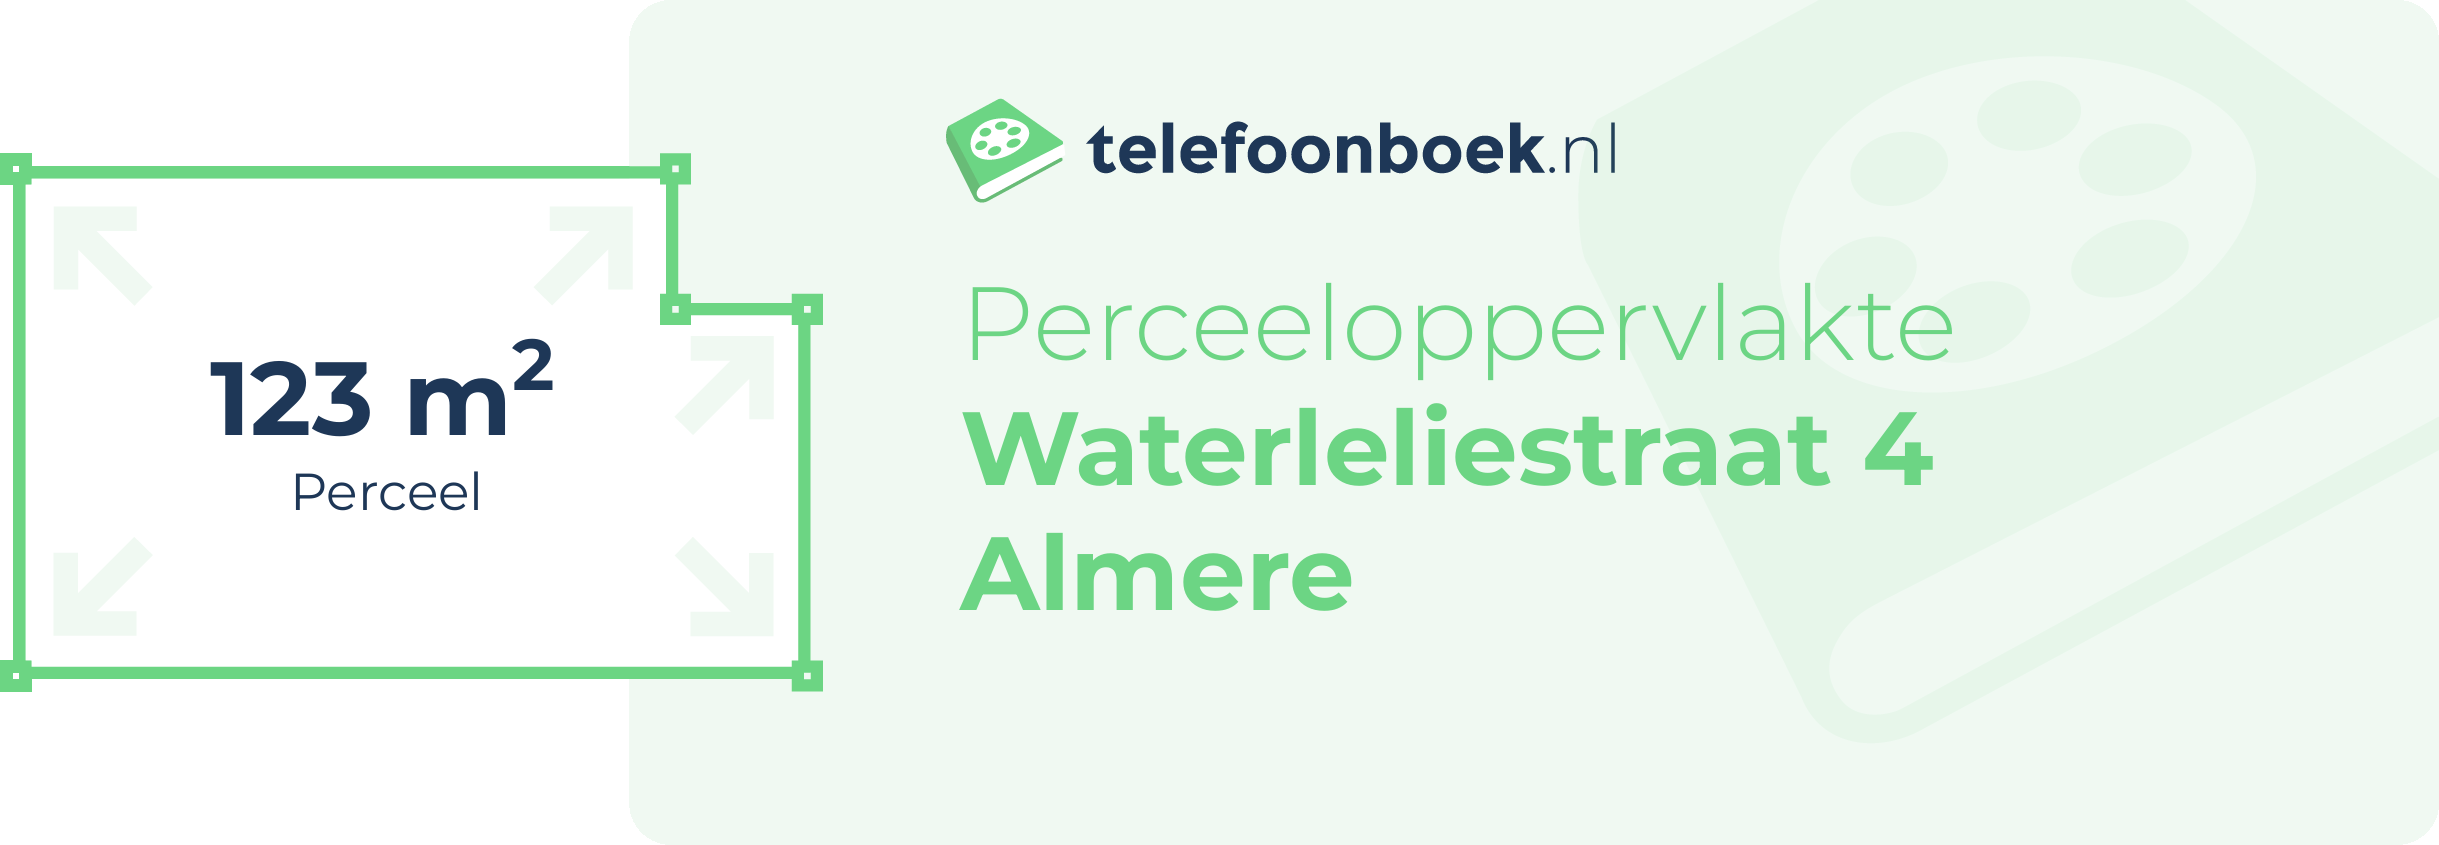 Perceeloppervlakte Waterleliestraat 4 Almere